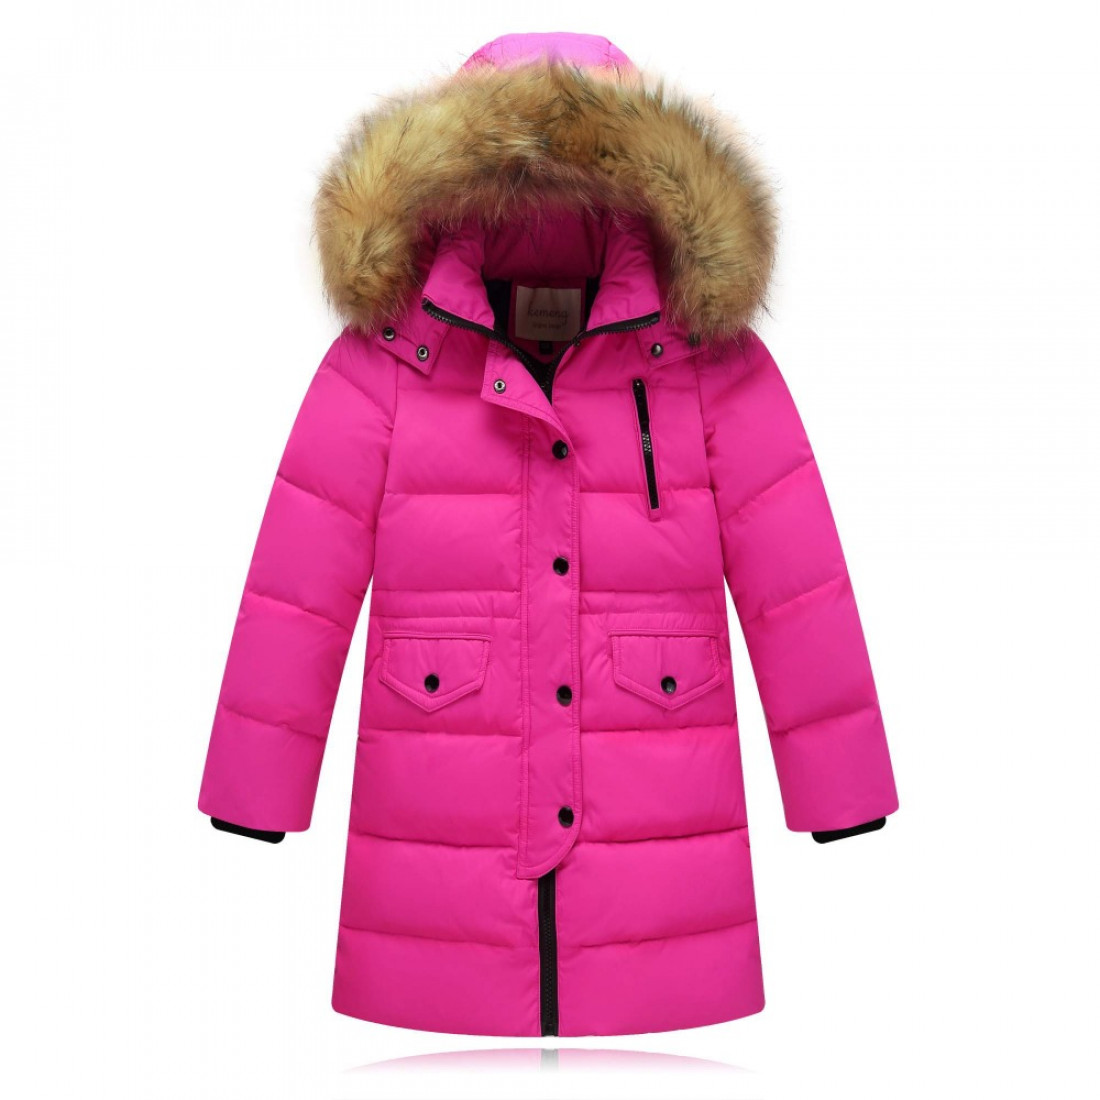 Как выбрать куртку на зиму ребенку?